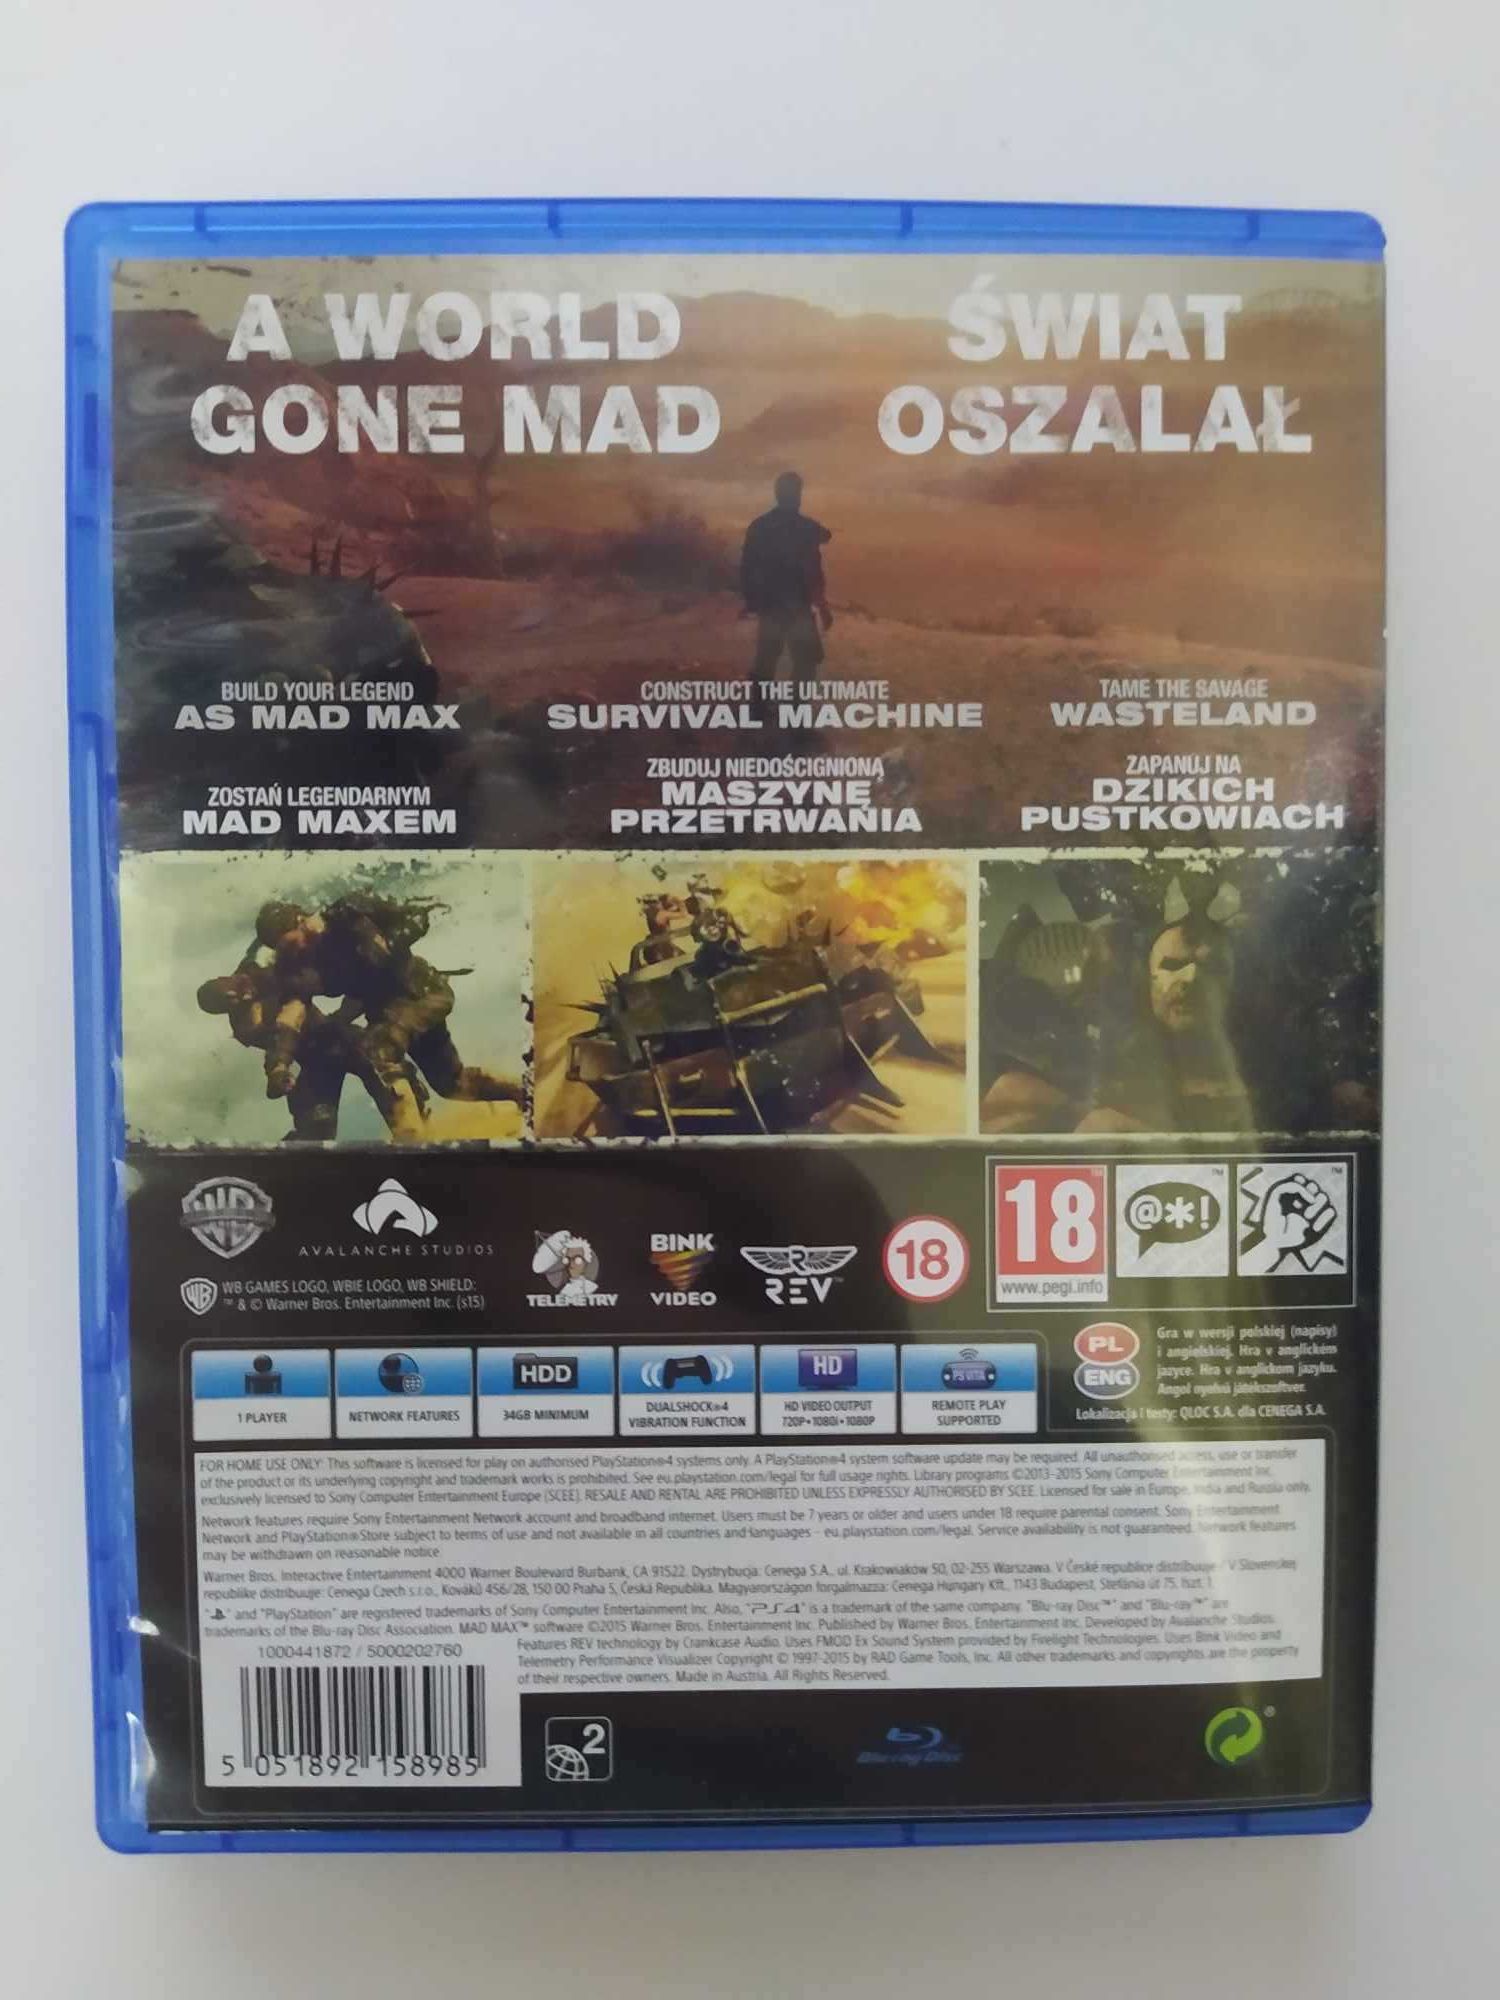 Mad Max PS4 Polskie napisy w grze / Polska okładka